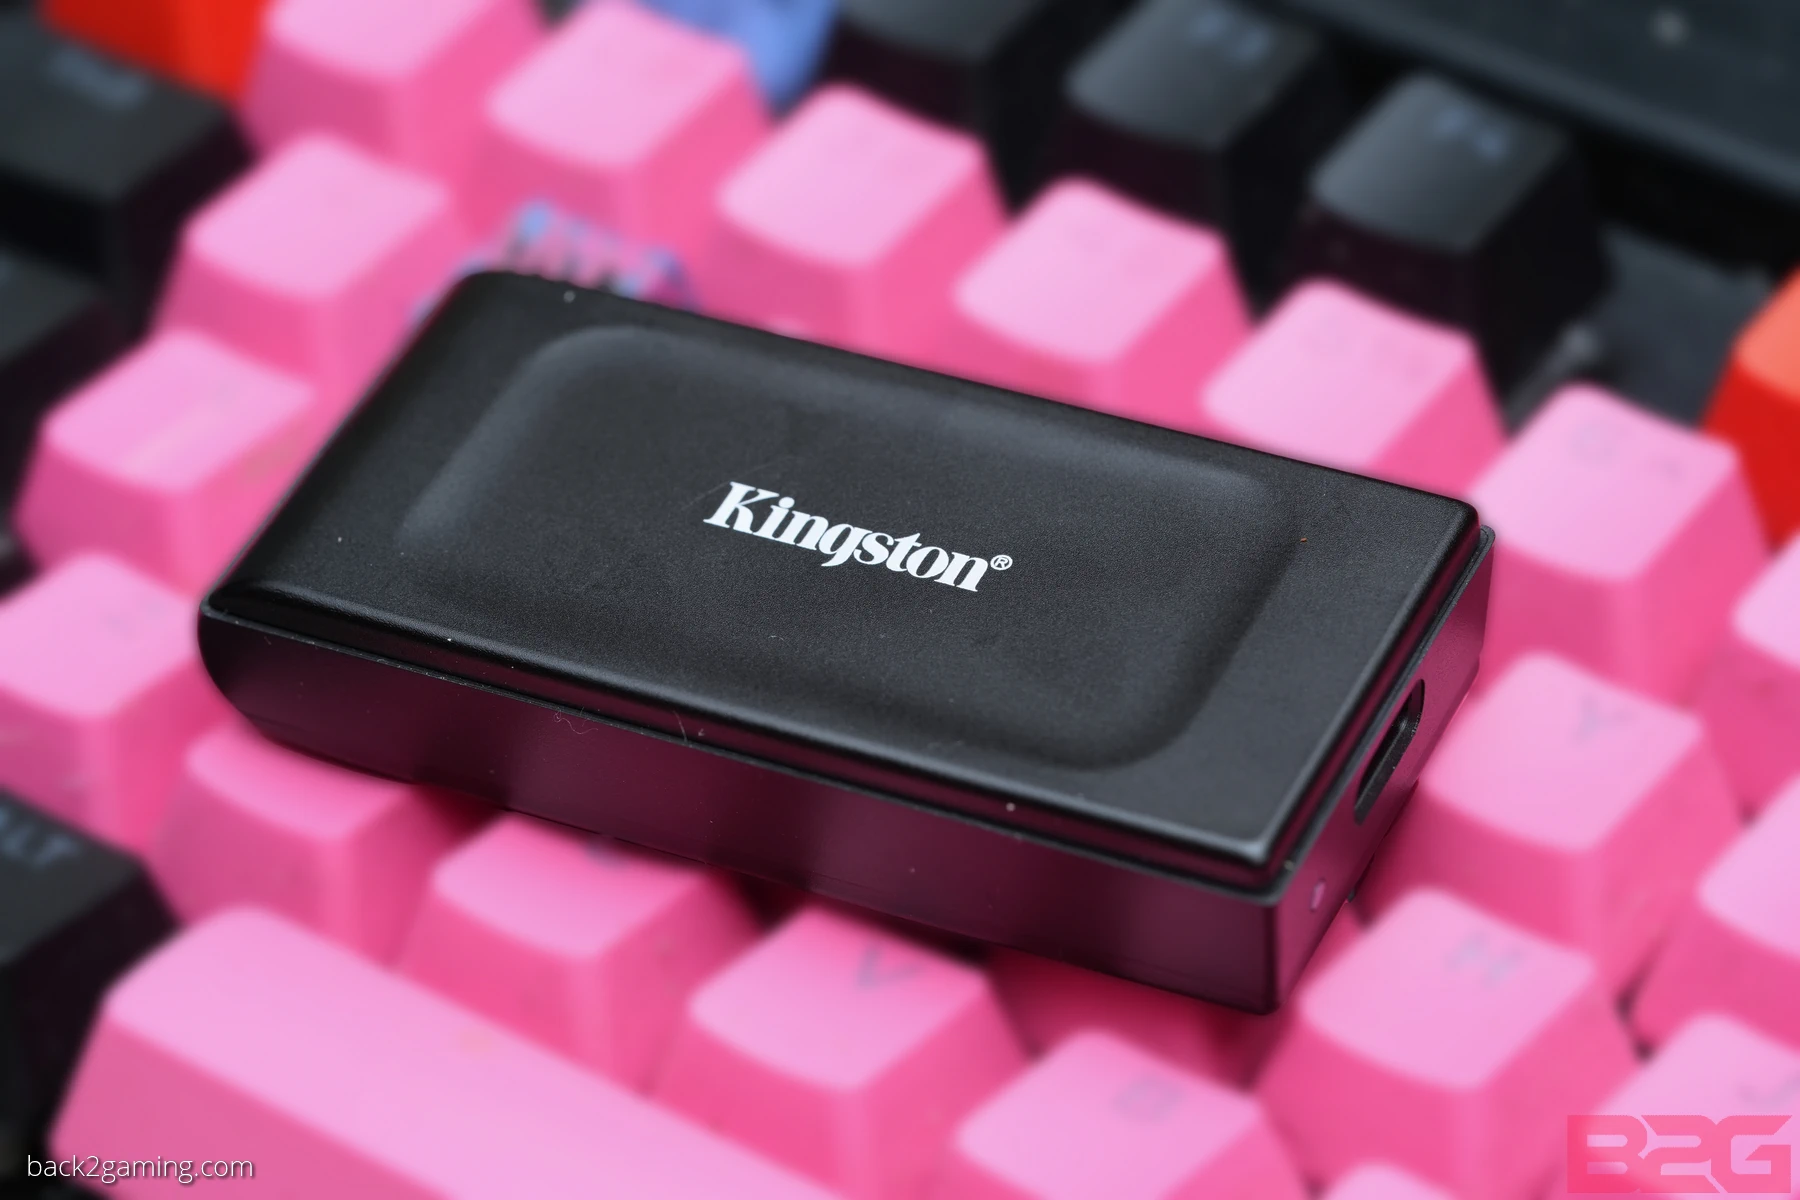 Kingston XS1000 External SSD Review - xs1000